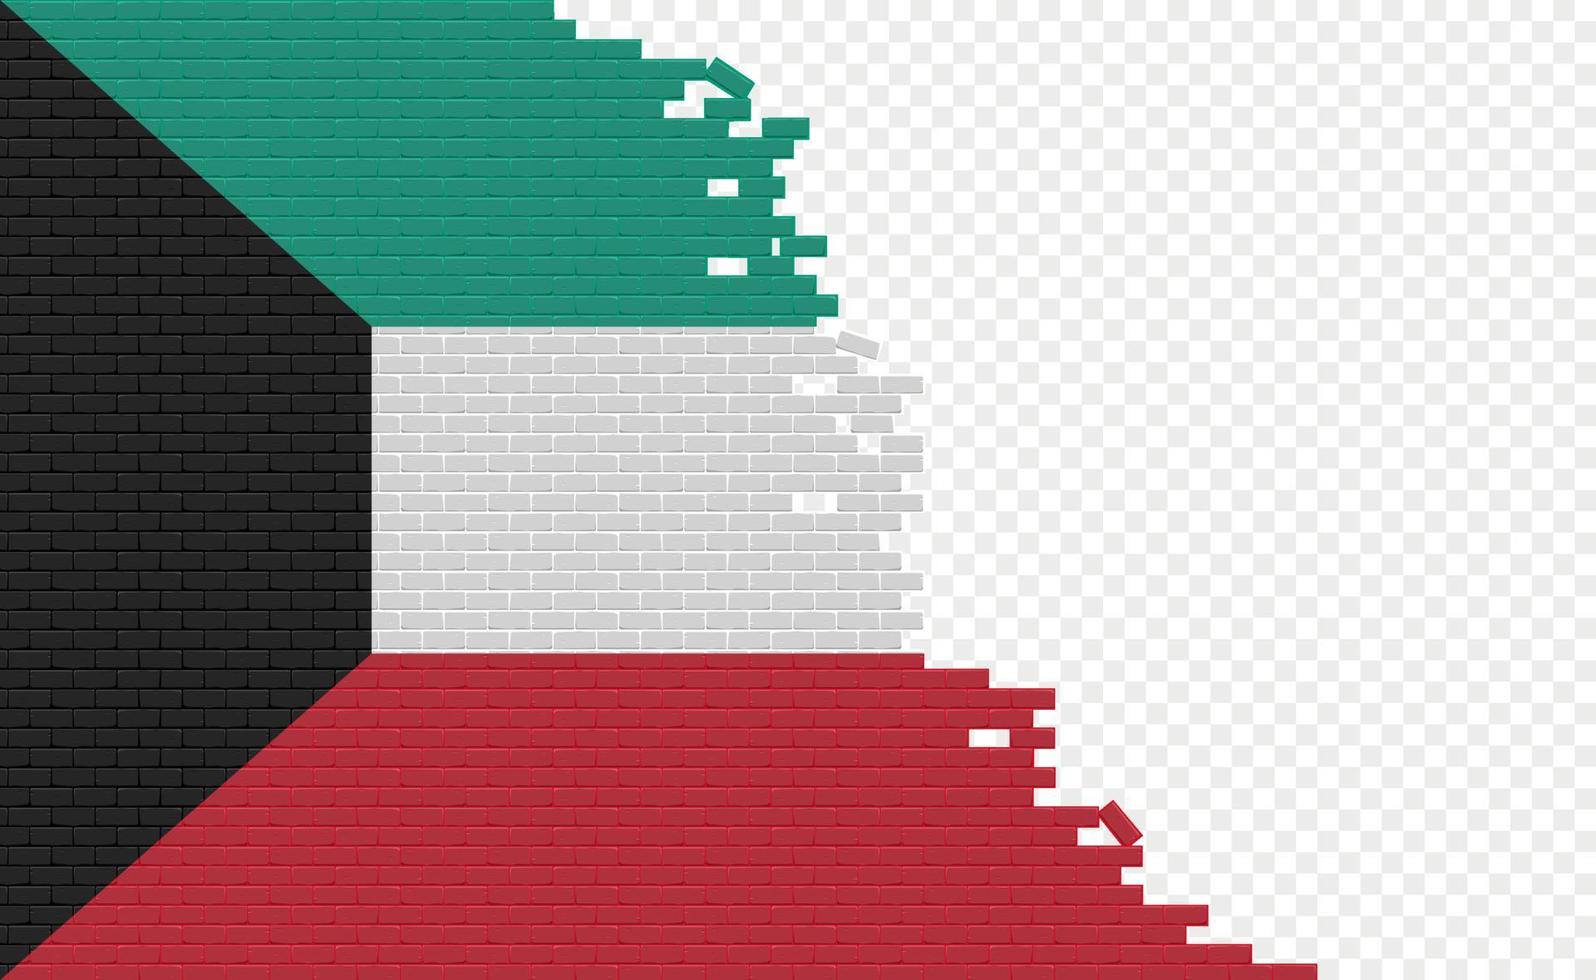 bandera de kuwait en la pared de ladrillos rotos. campo de bandera vacío de otro país. comparación de países. fácil edición y vector en grupos.